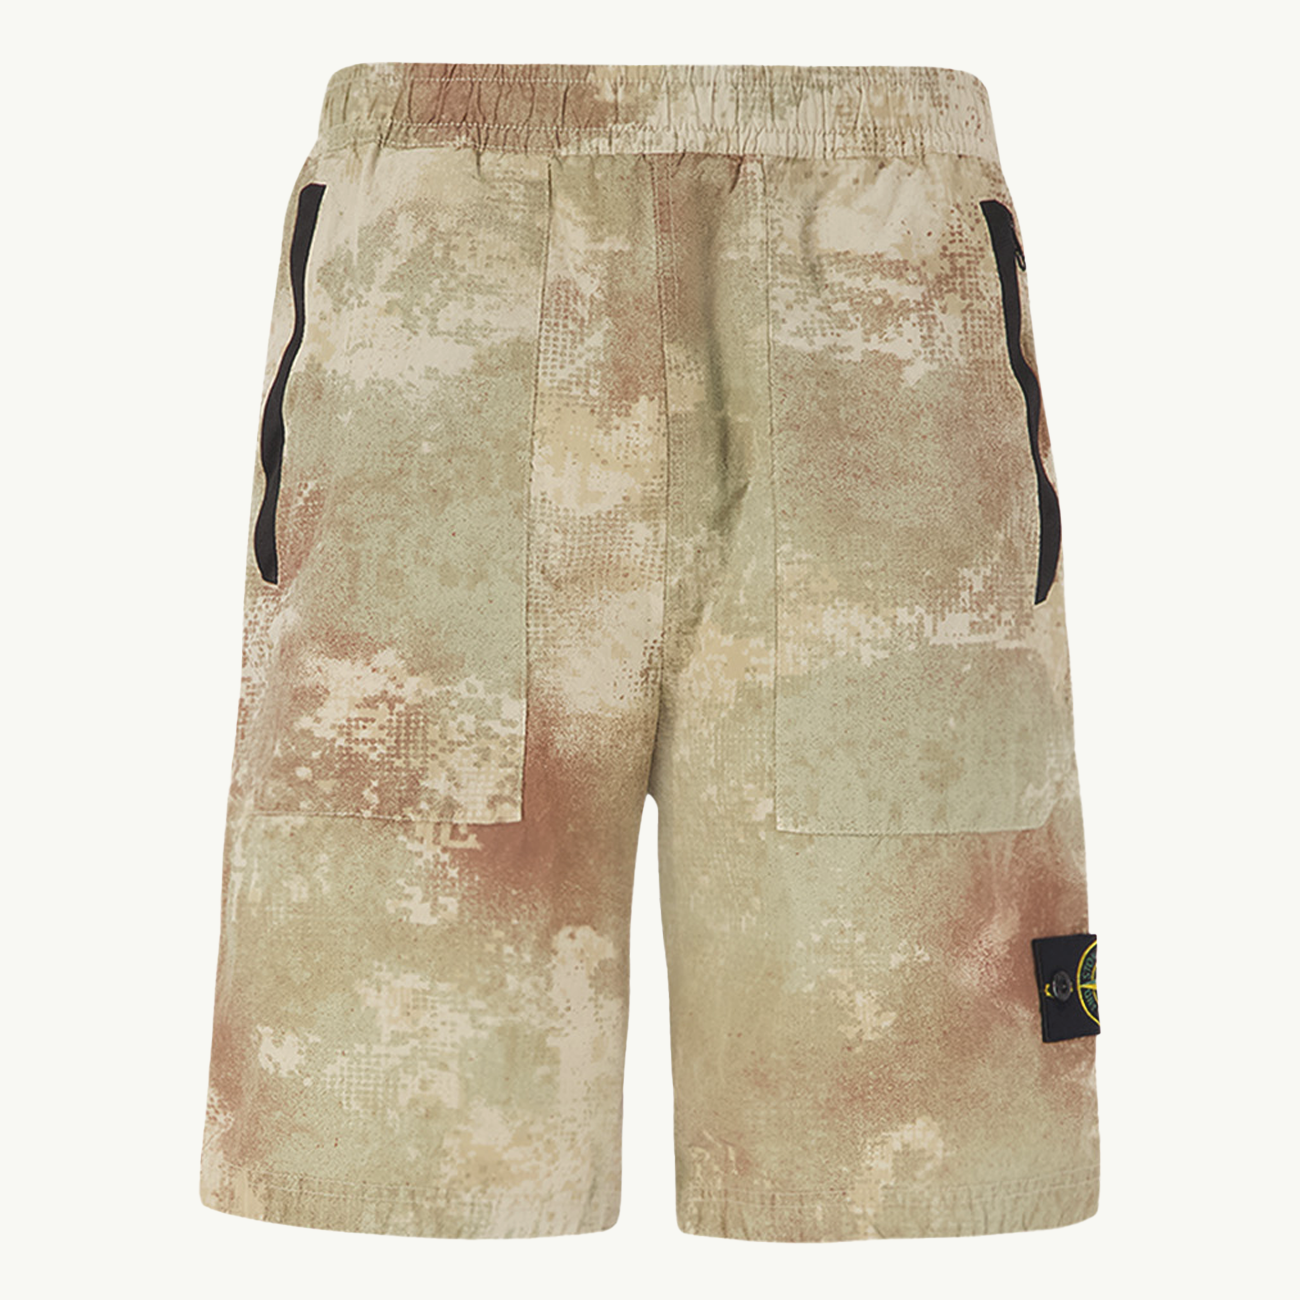 Bermuda Patch Camo Print Shorts - Natural Beige 9180